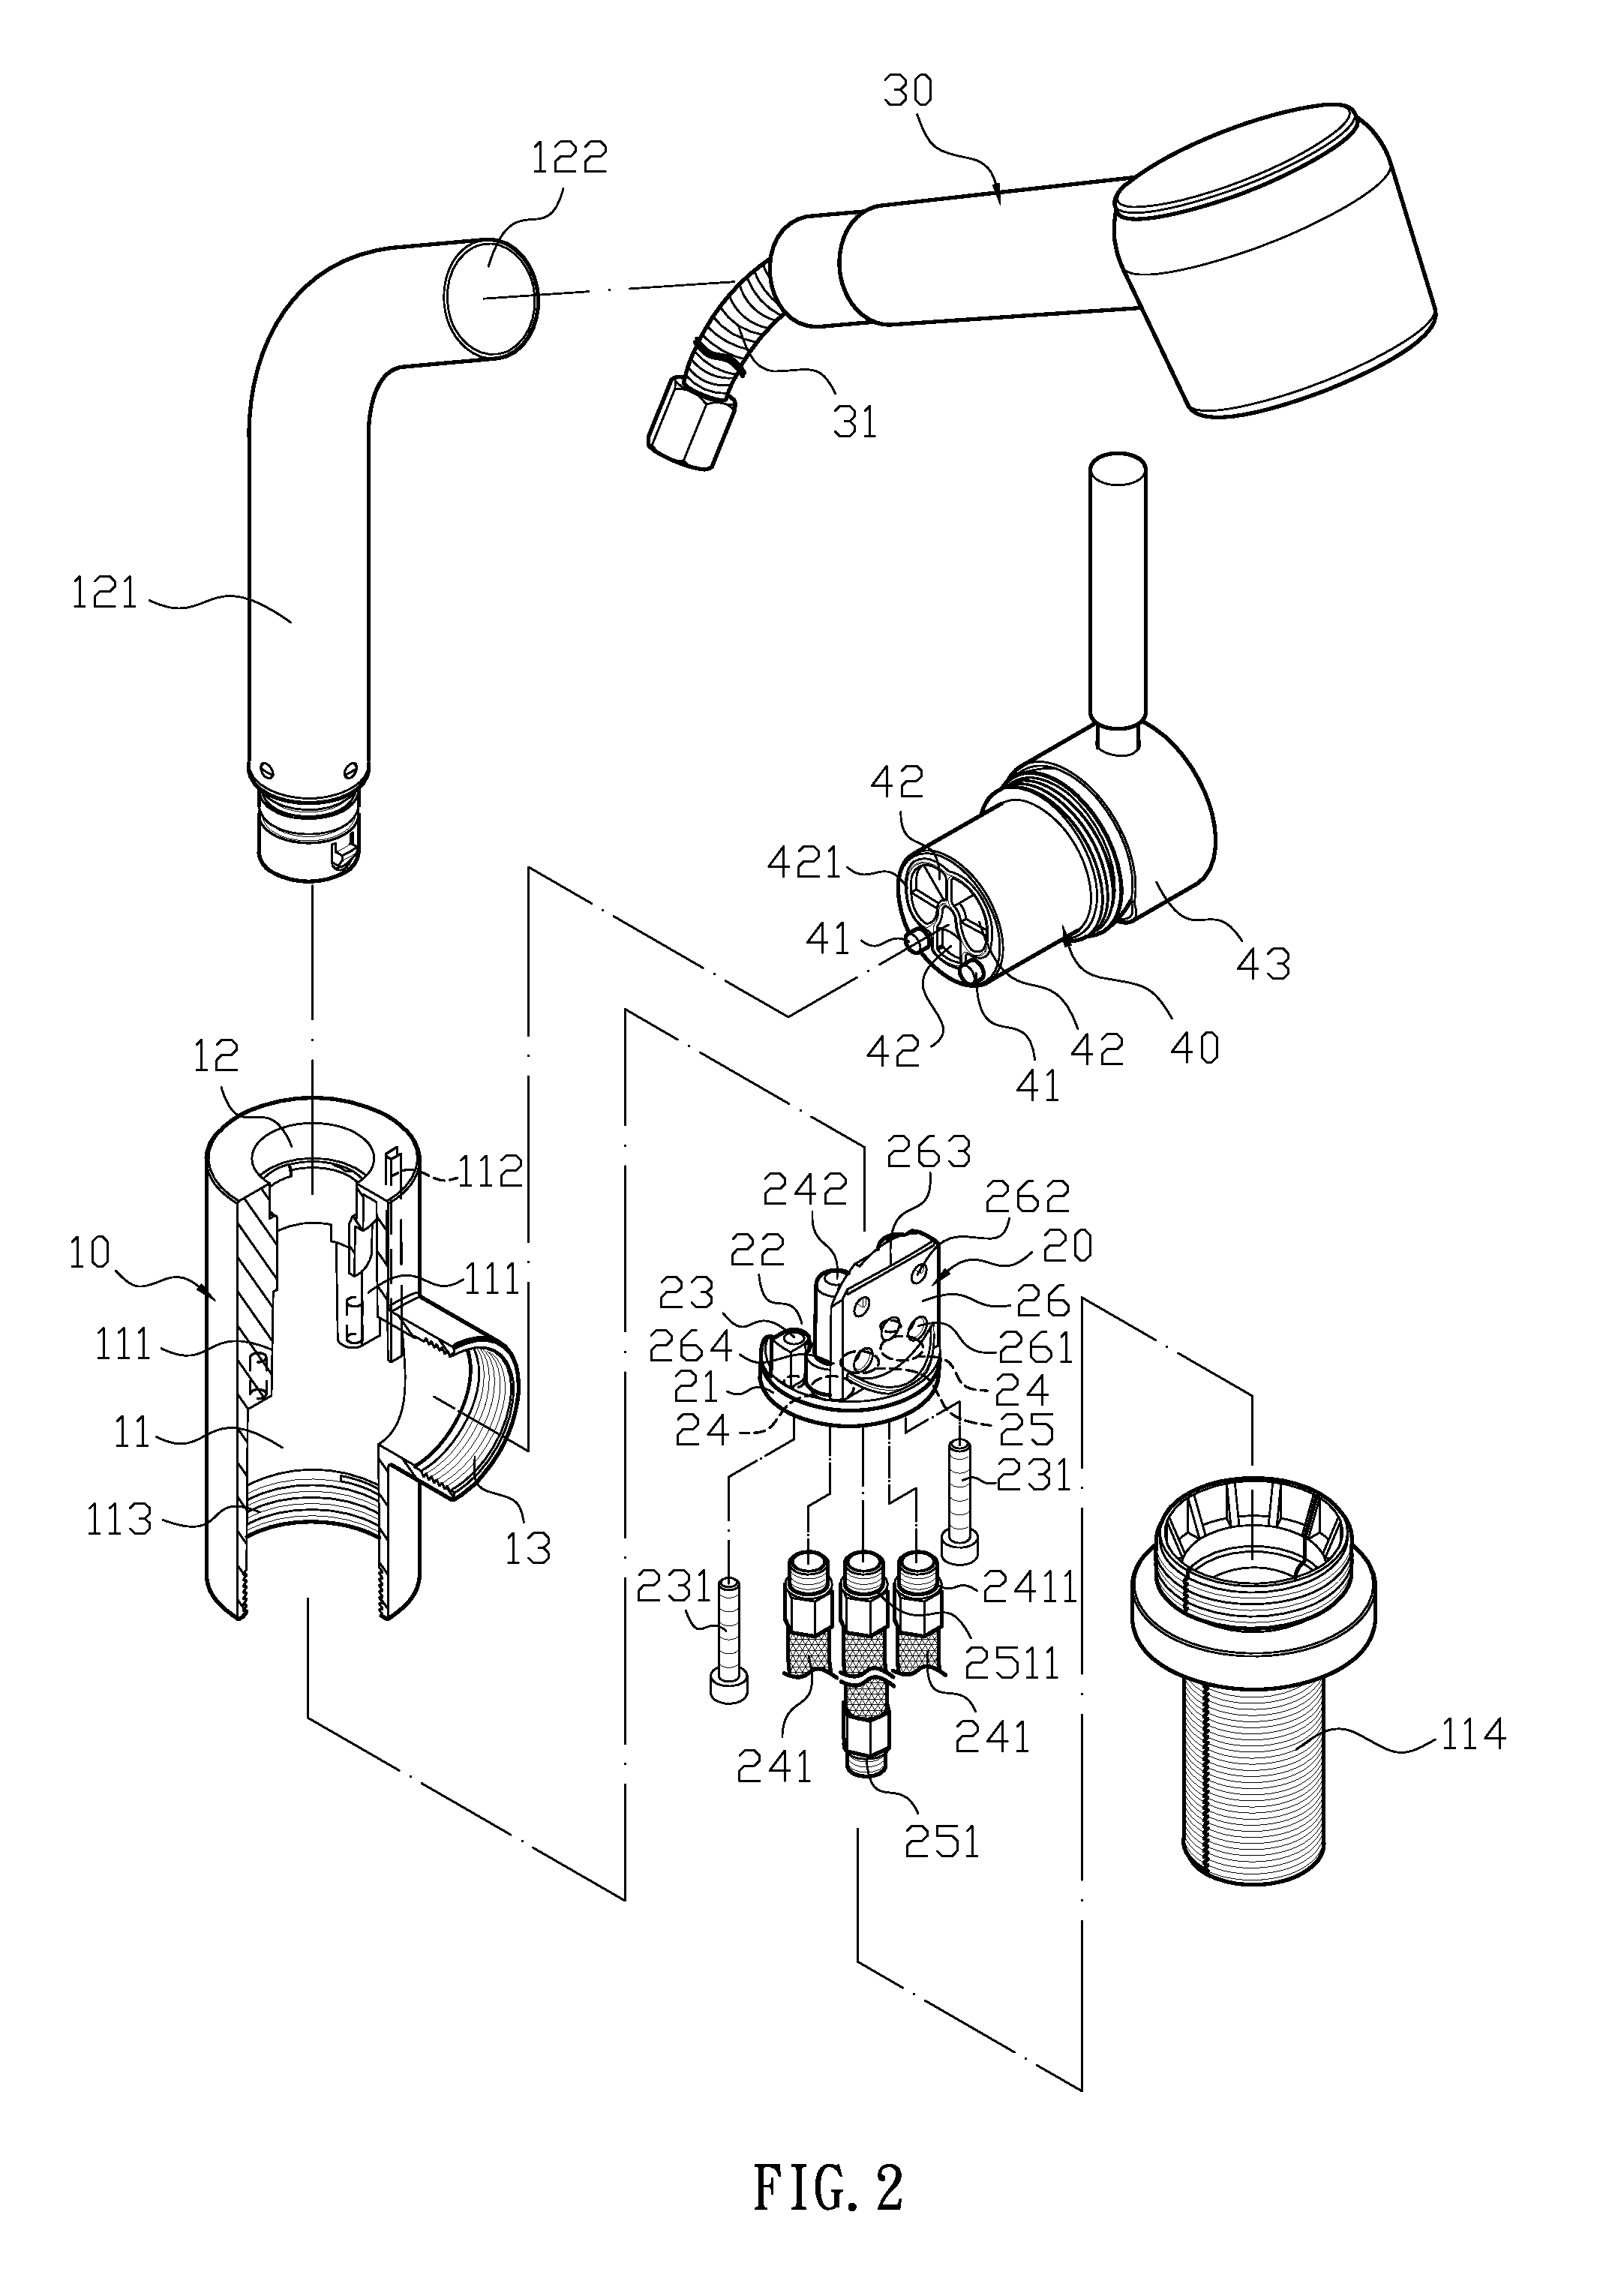 Faucet structure